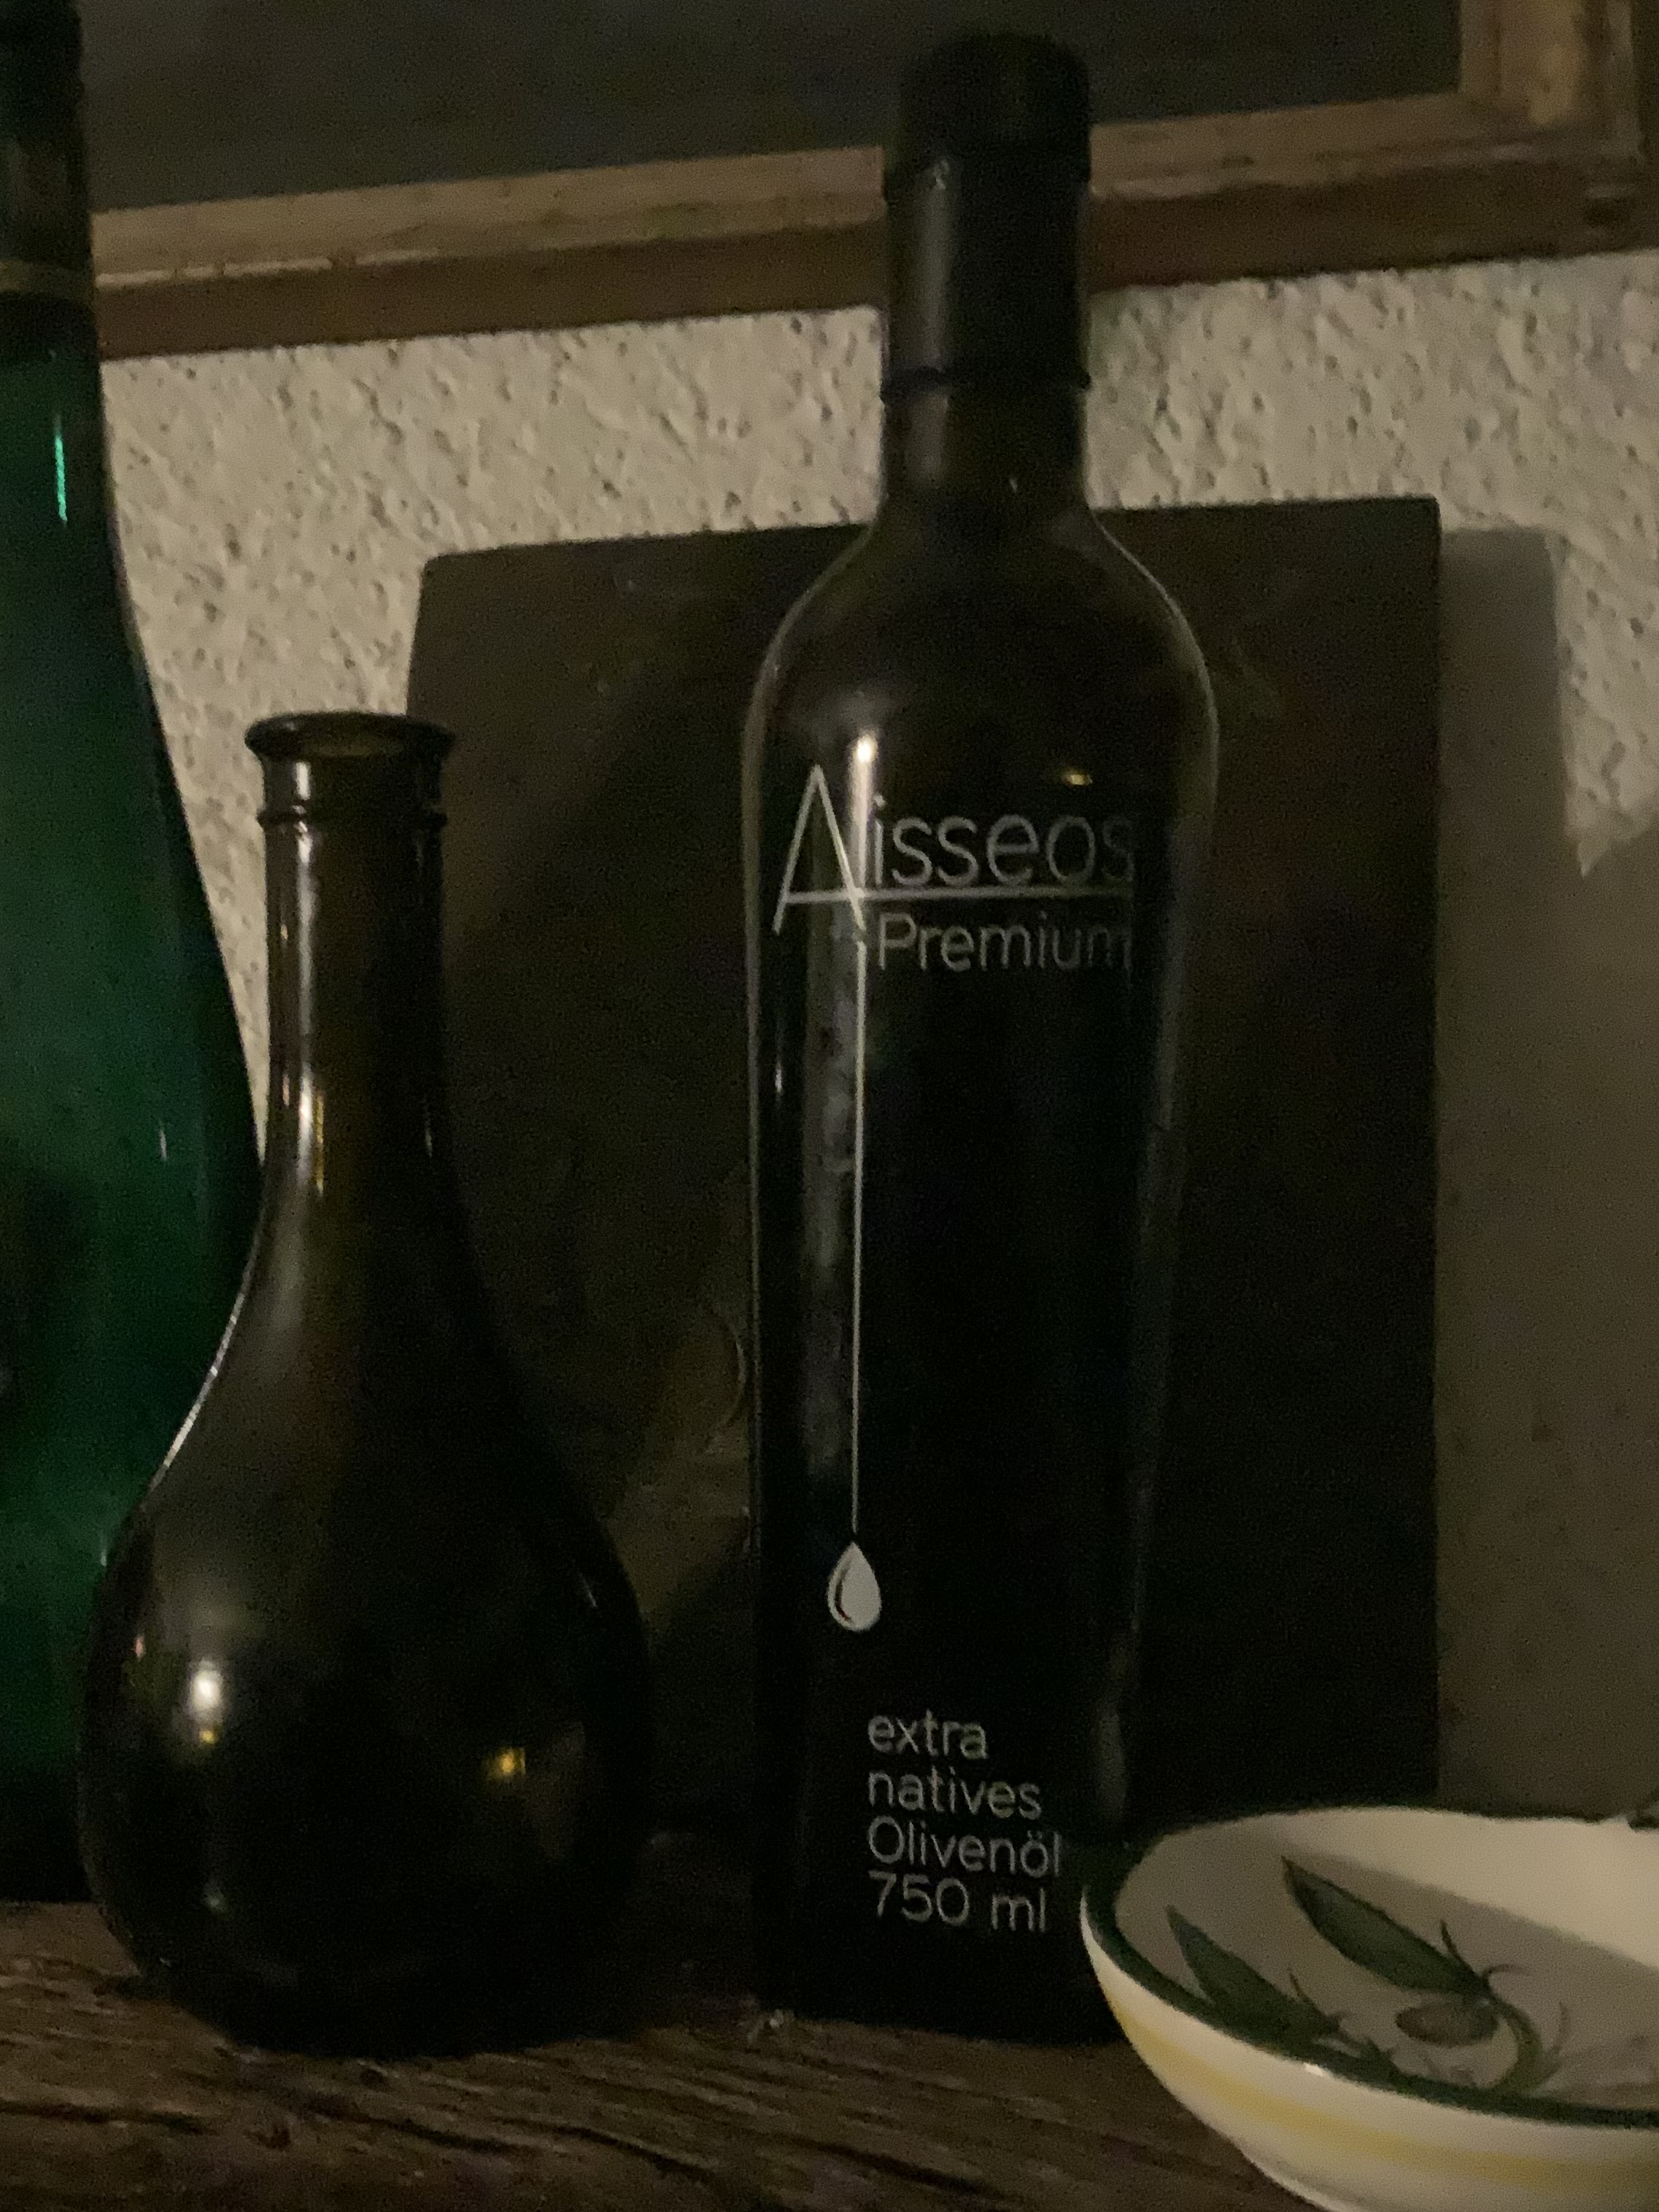 Alisseos Premium Wein